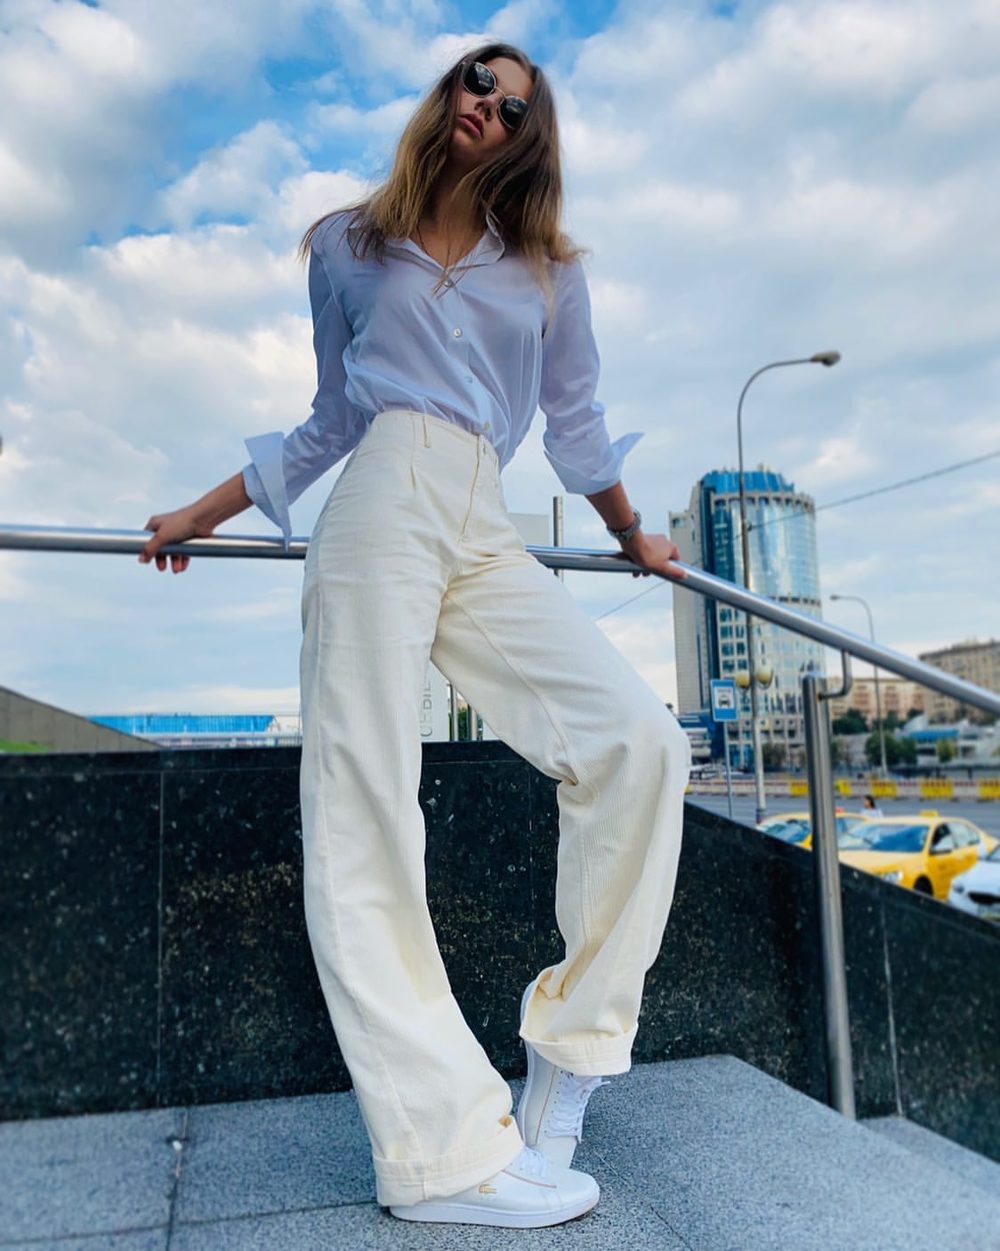 Александра Солдатова сделала новую публикацию в Instagram